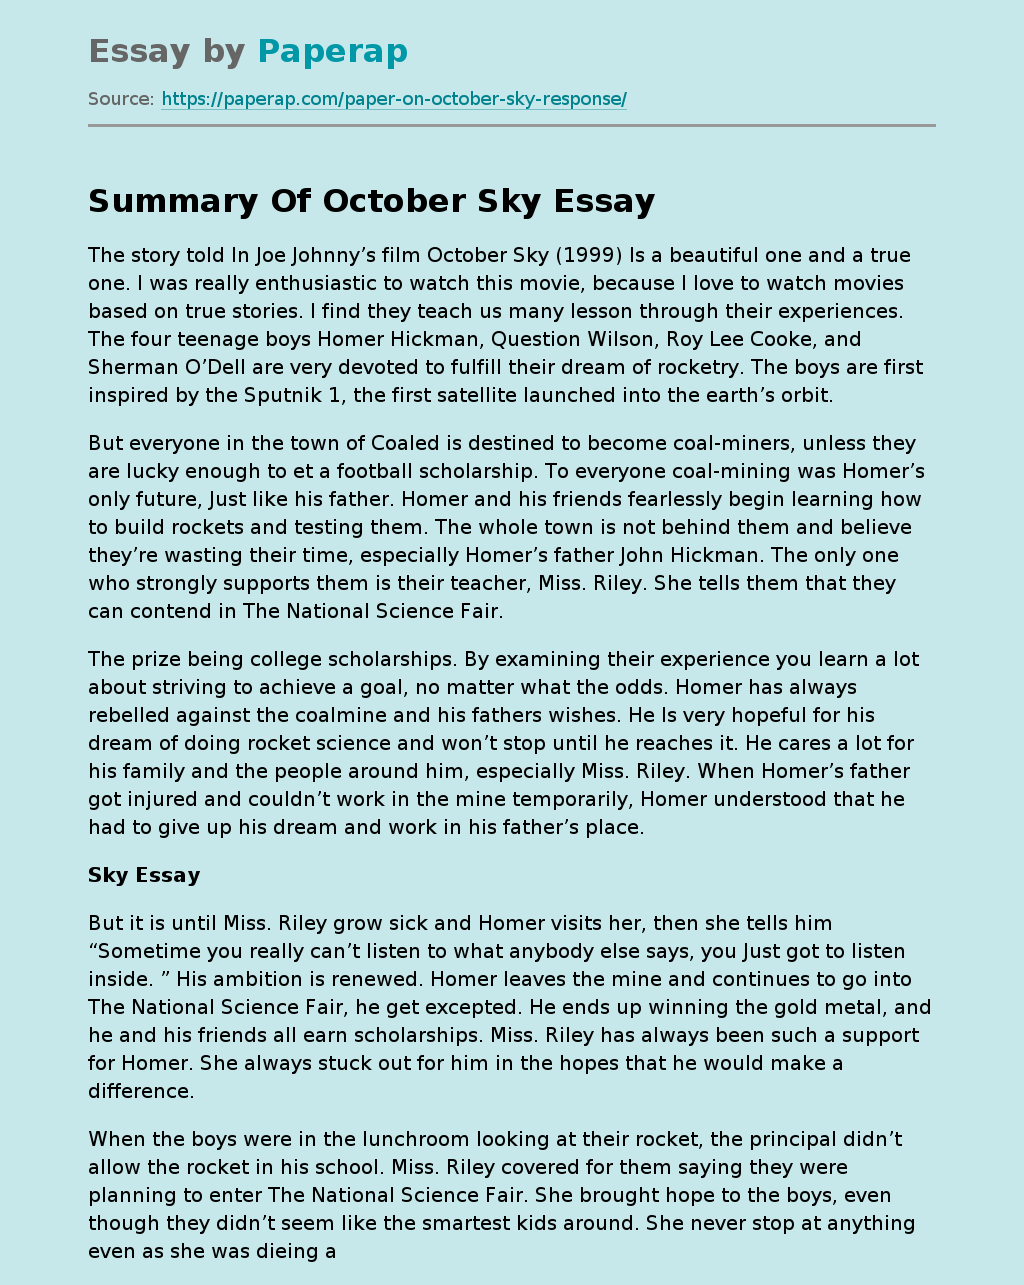 Summary Of October Sky